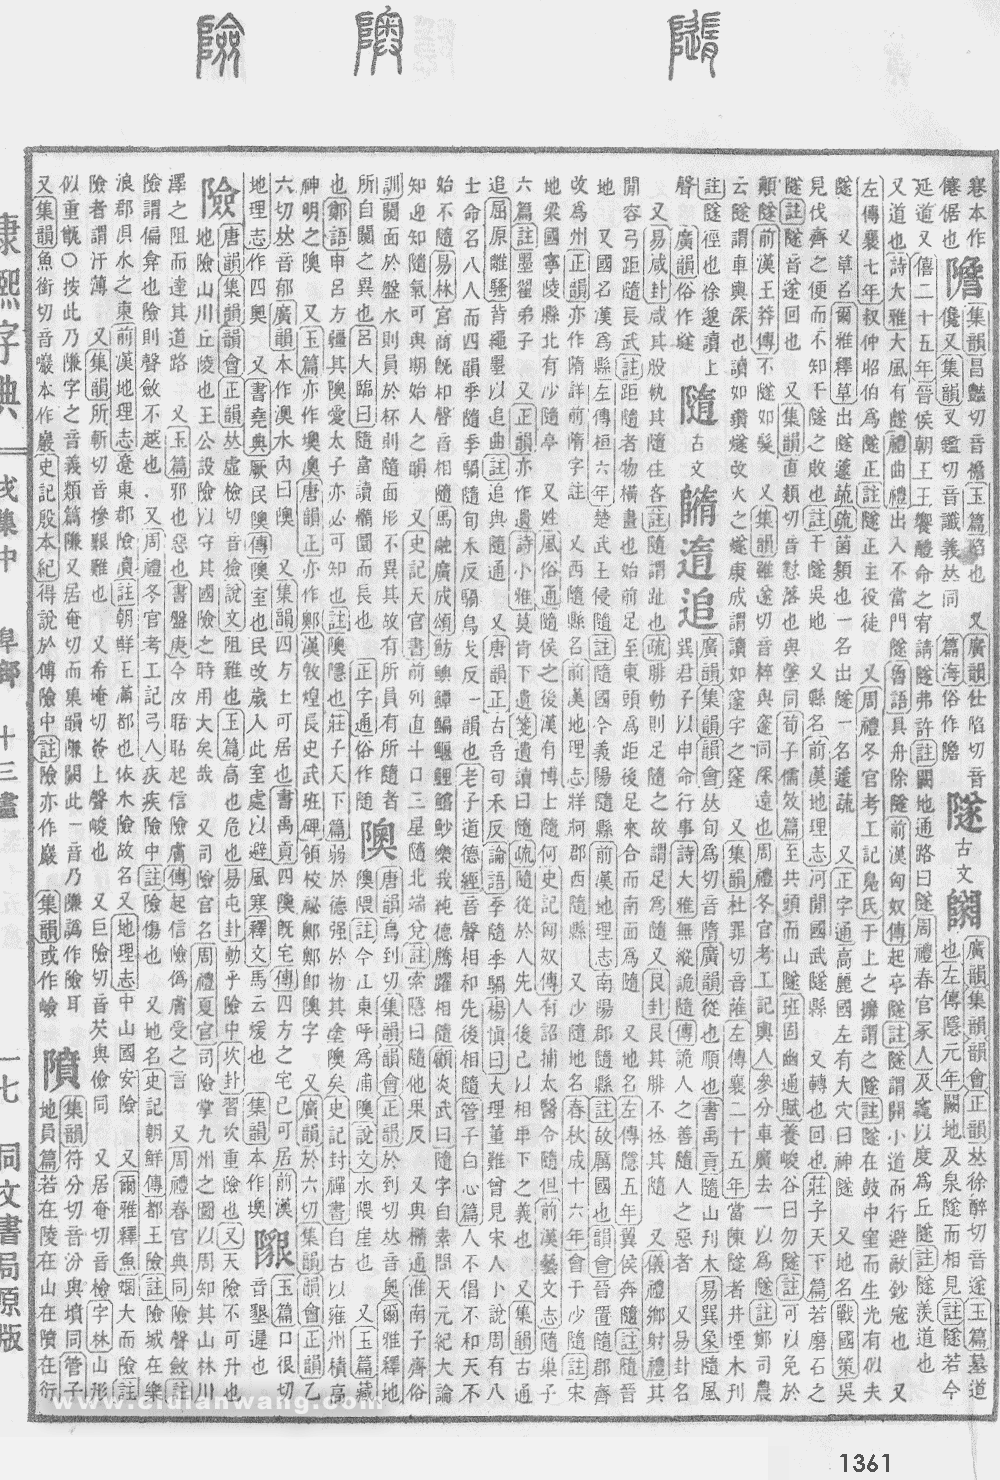 康熙字典掃描版第1361頁